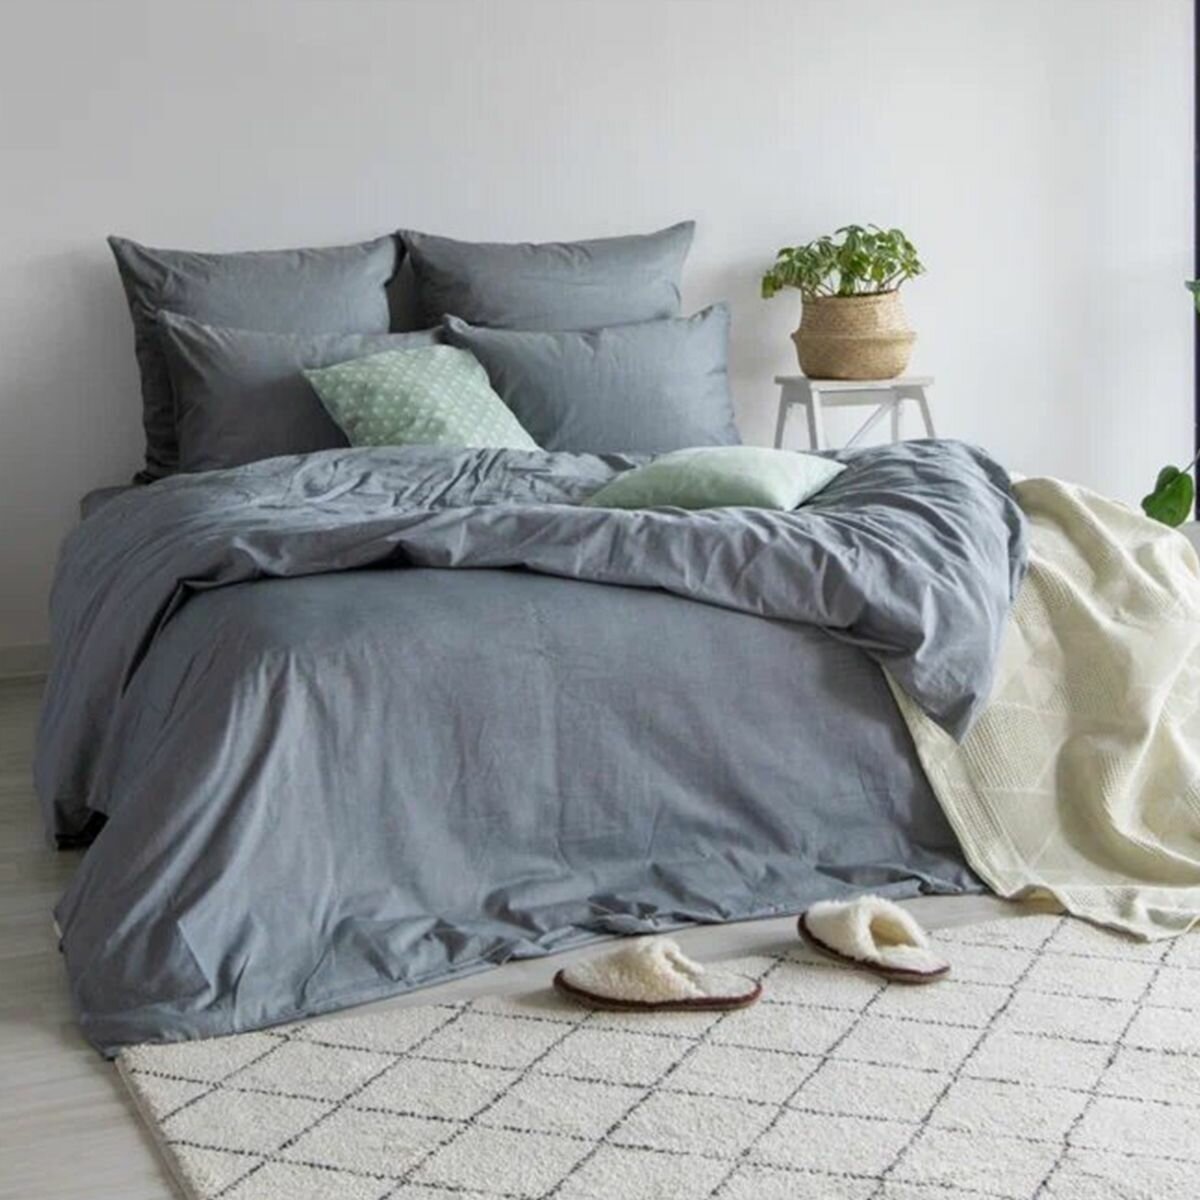 Комплект постельного белья CozyLike 2 спальное с Евро простыней, 50х70, сатин, серый